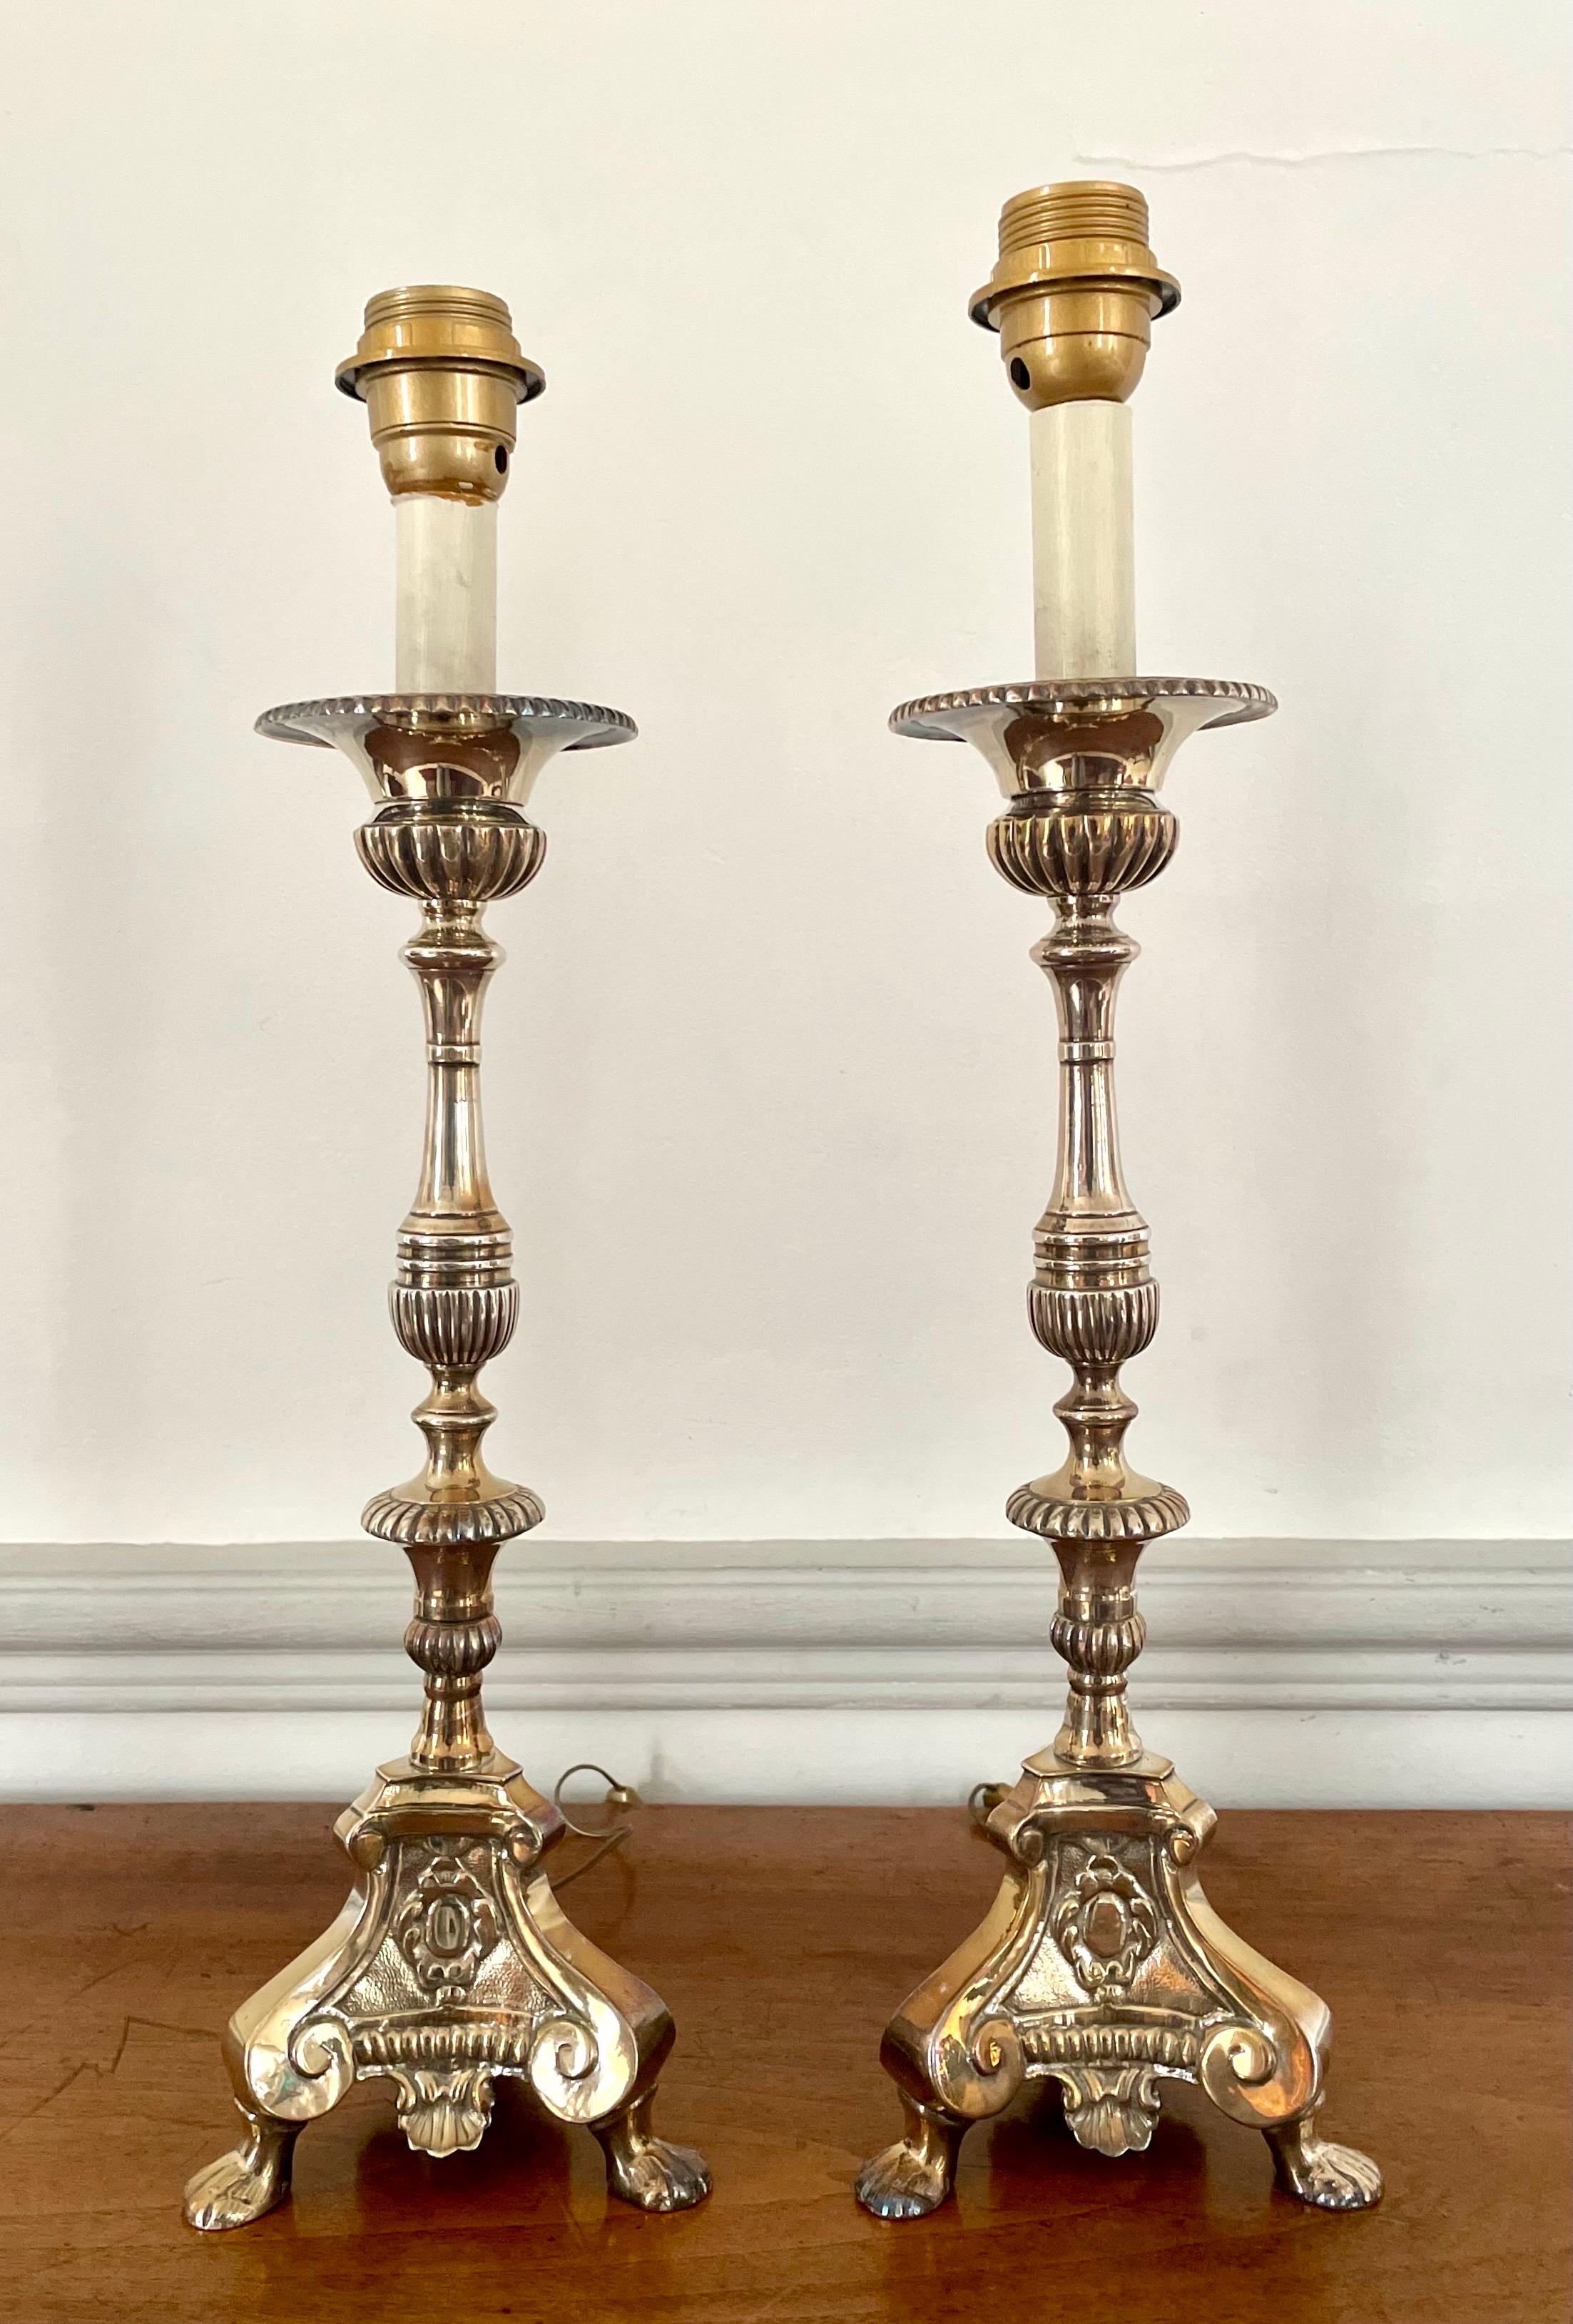 Très belle paire de chandeliers d'église ou d'autel en métal argenté.
L'usure de l'argent leur donne une magnifique patine.
Style Louis XIV
XIXe siècle.
Ces jolis bougeoirs / torchères sont montés comme une lampe pour être facilement utilisés dans